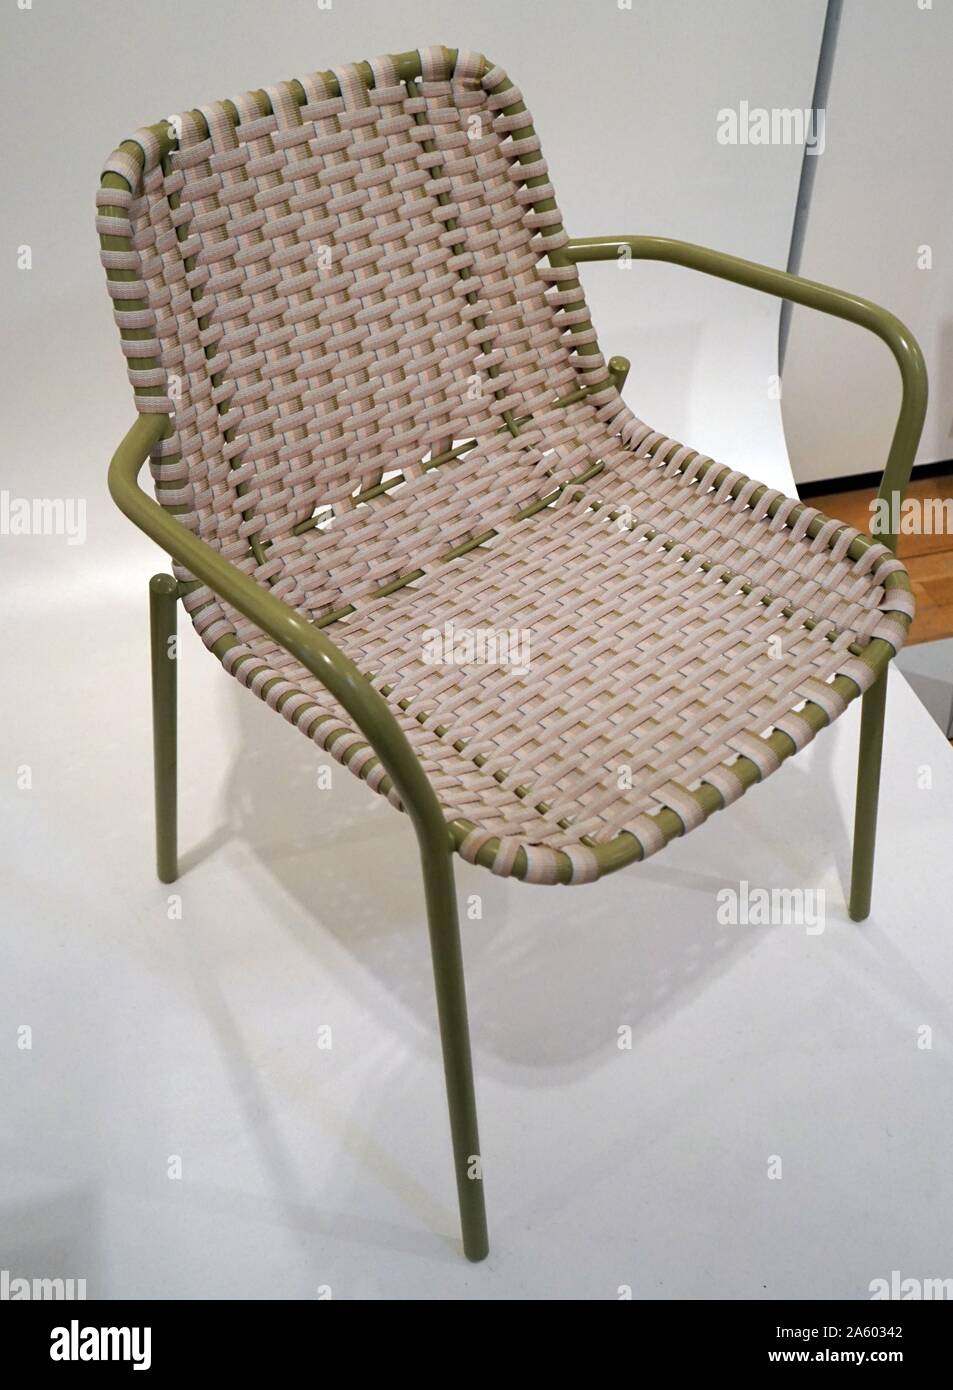 Chaise antistatique conçu par Scholten & Baijings et fabriqué par moustache. Datée 2015 Banque D'Images